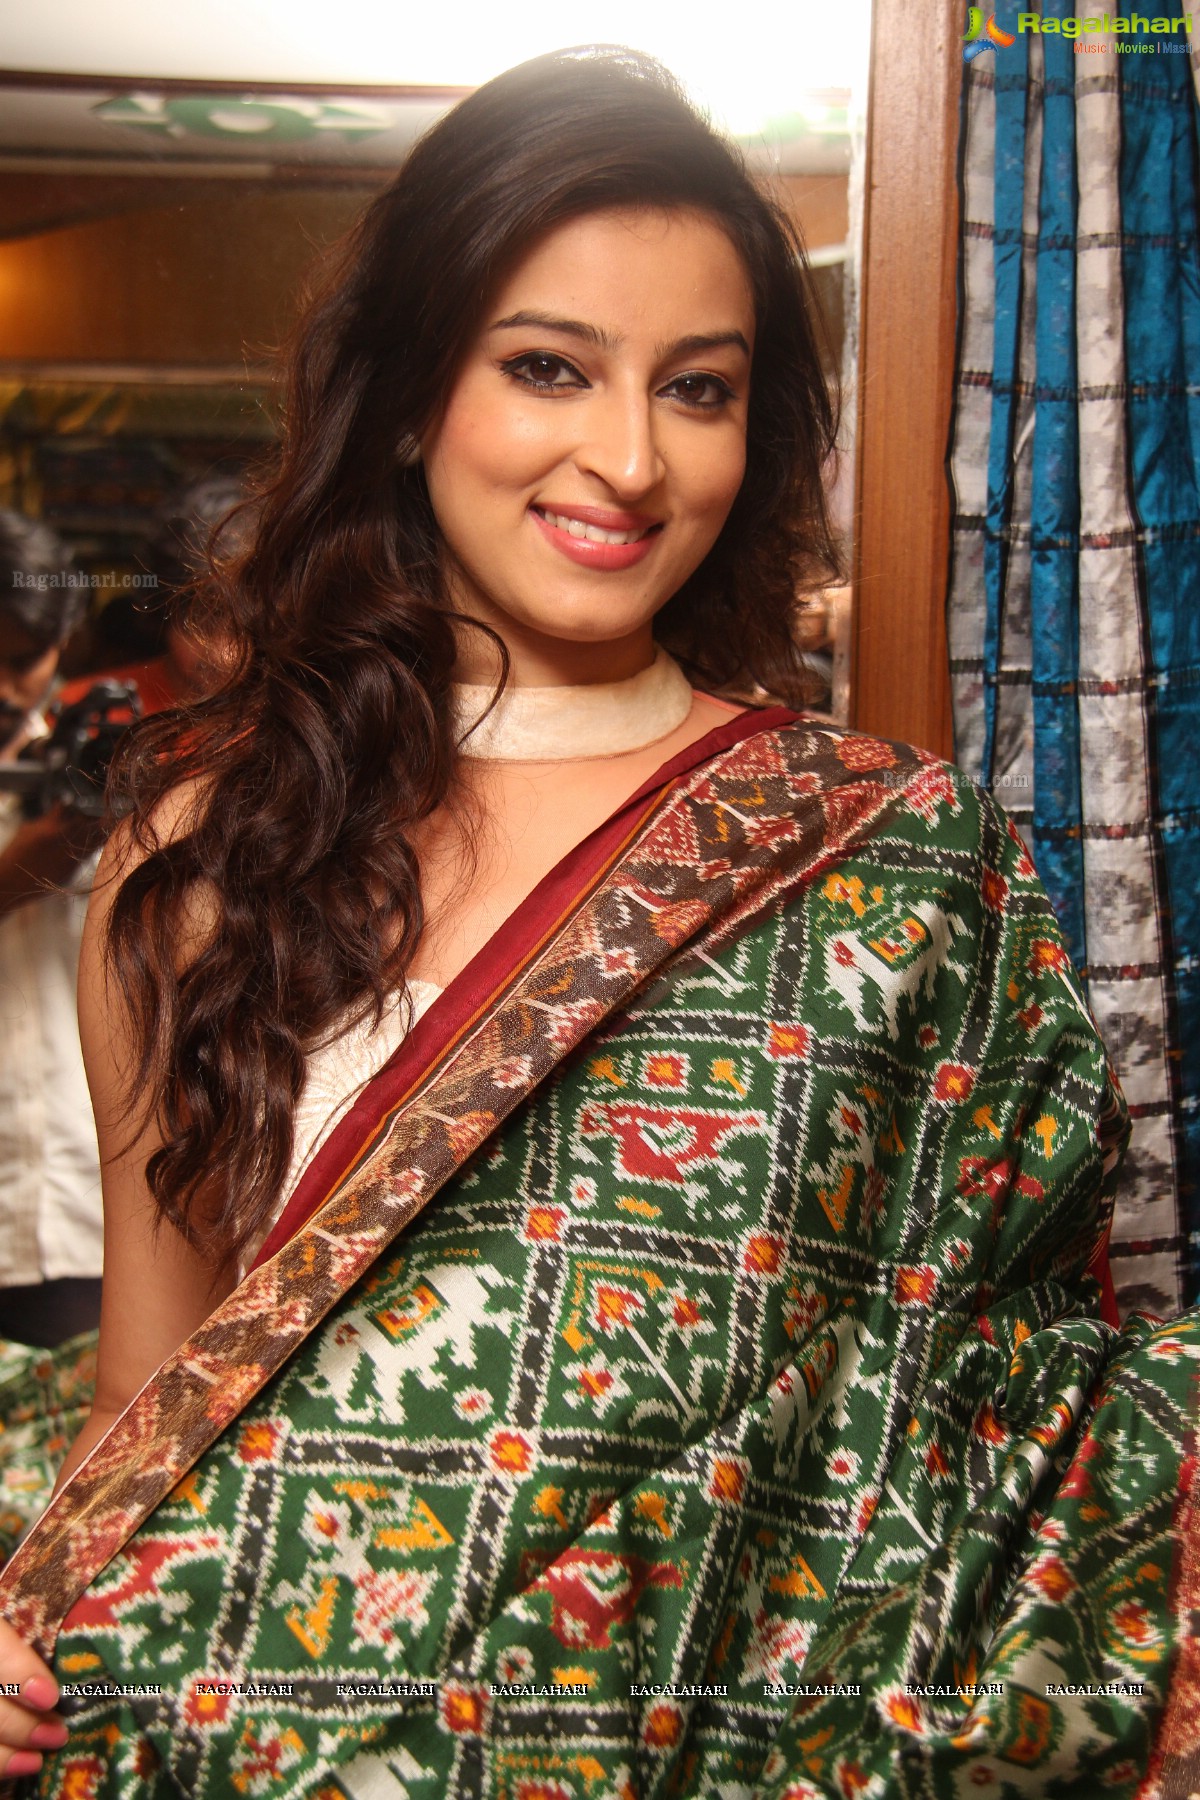 Chandni Sharma